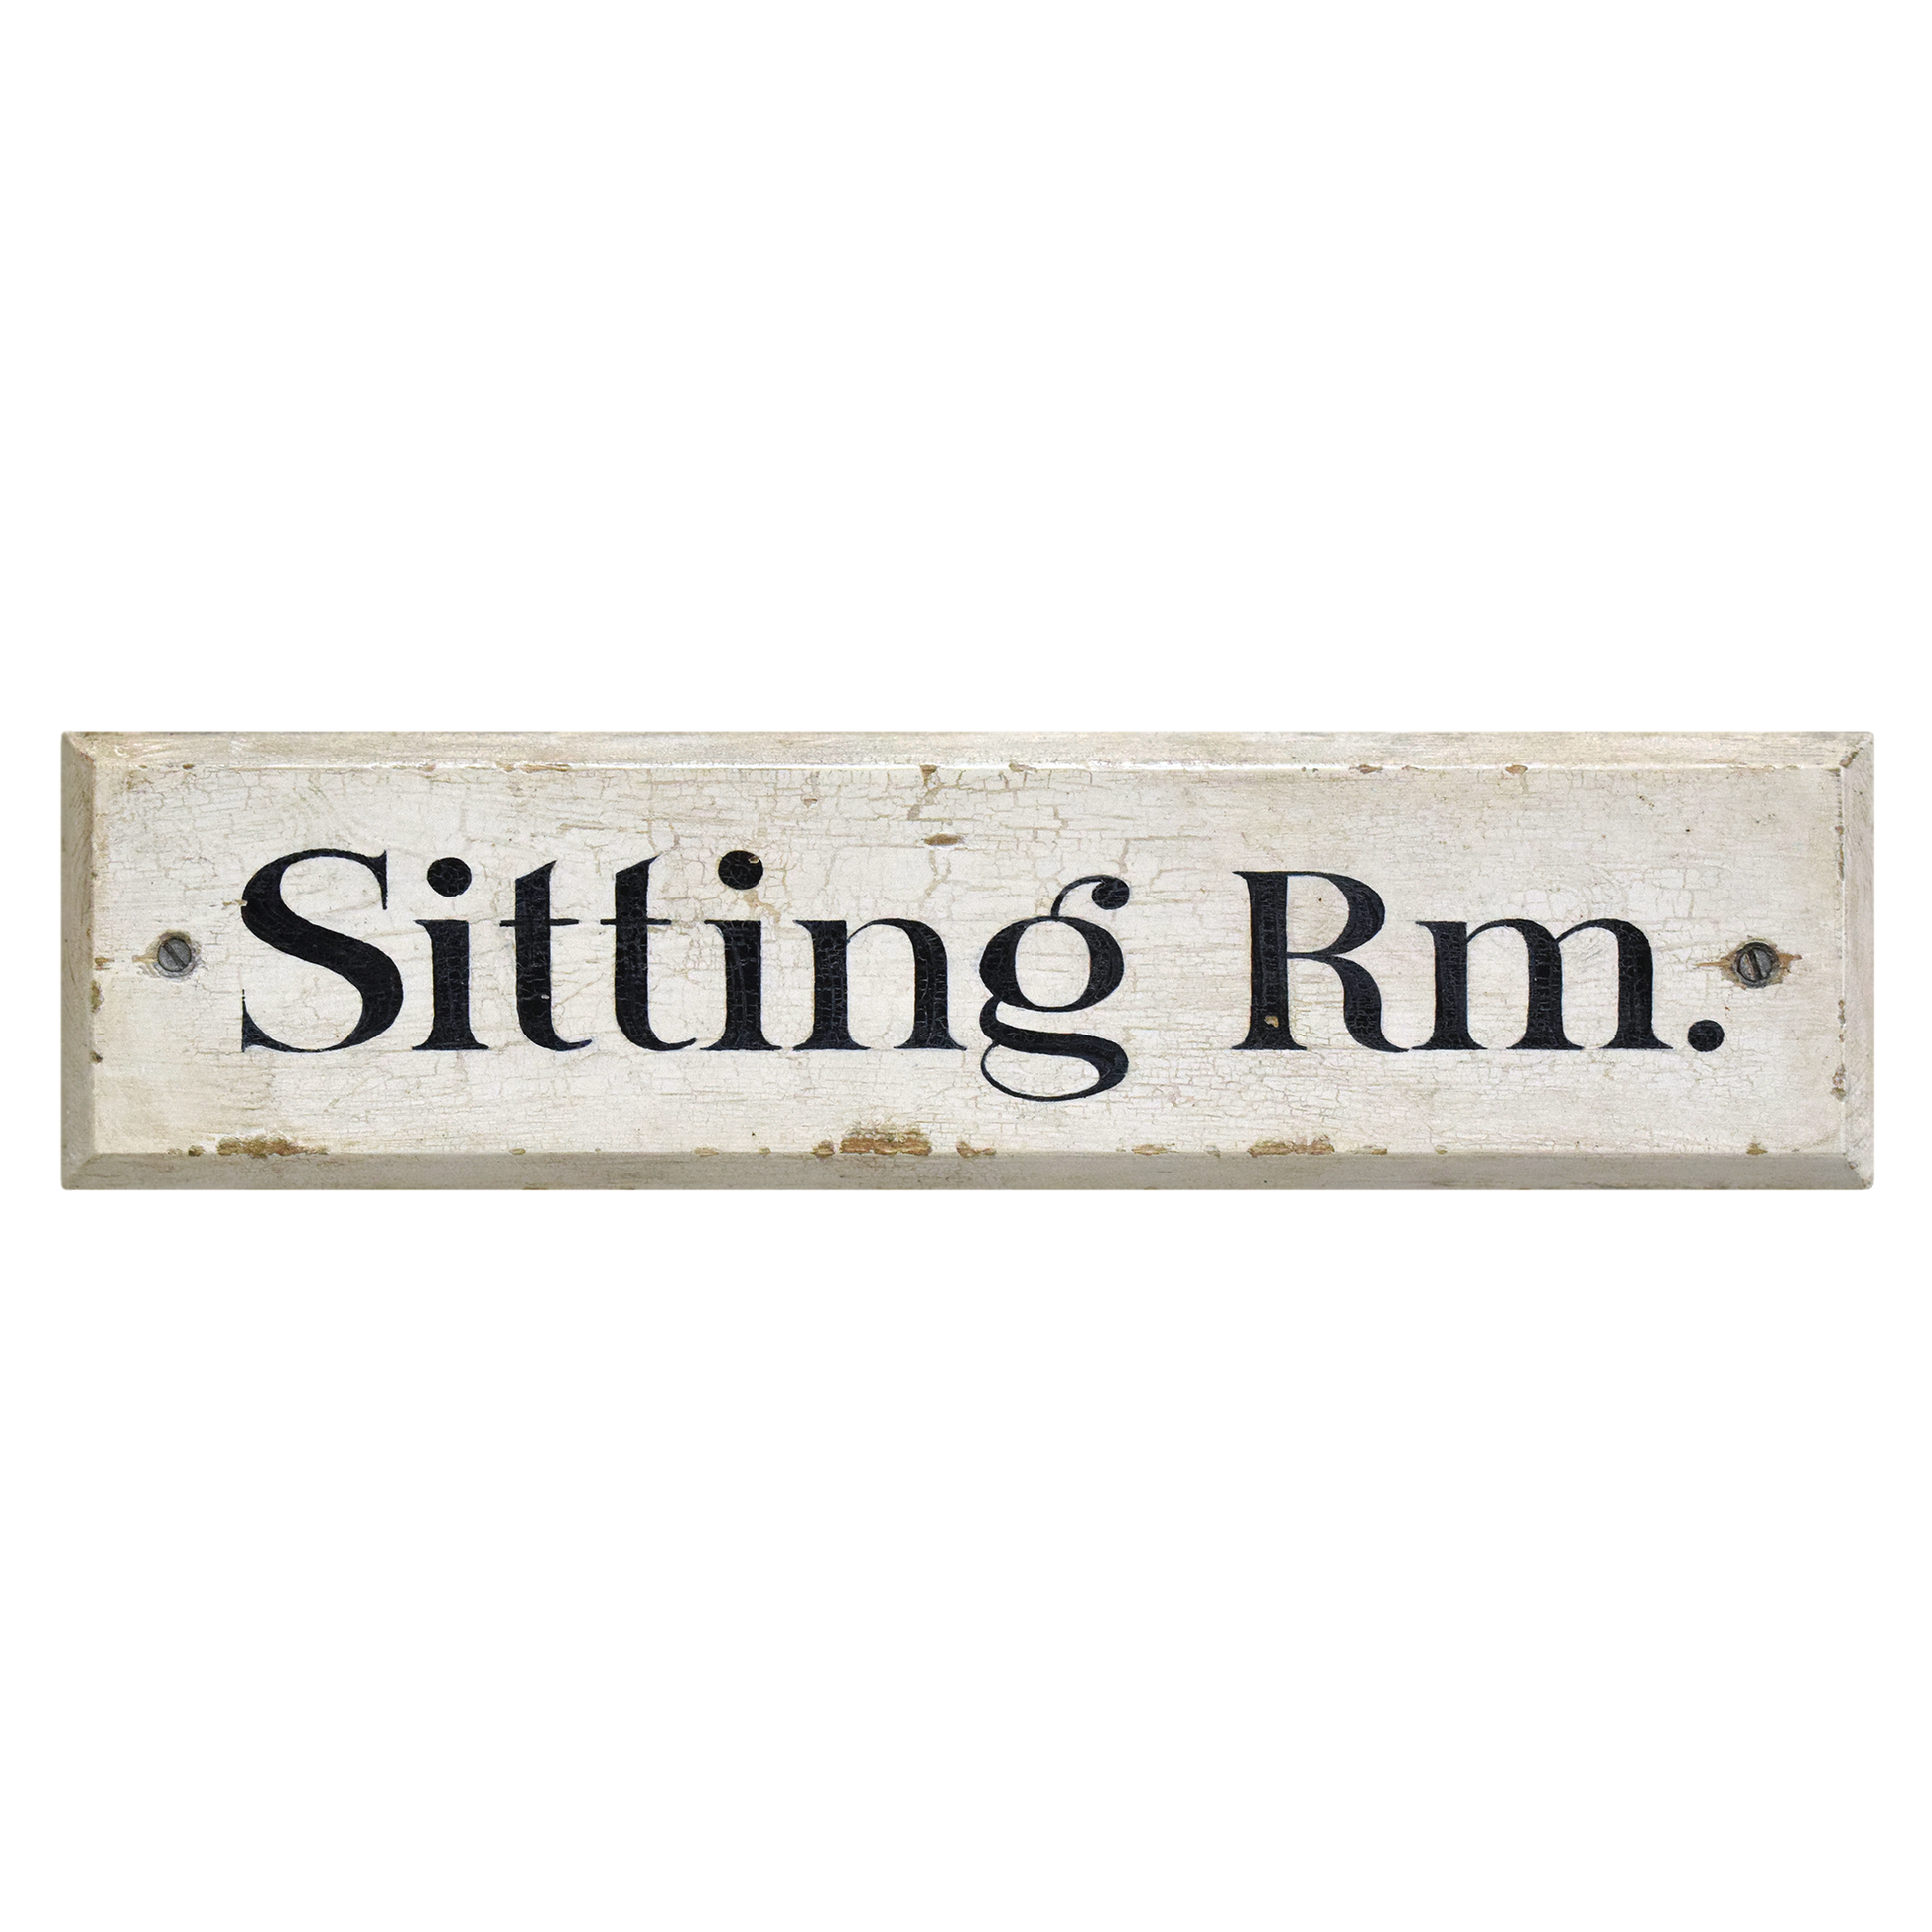 Black & White Vintage Wooden Door Sign: Sitting Room